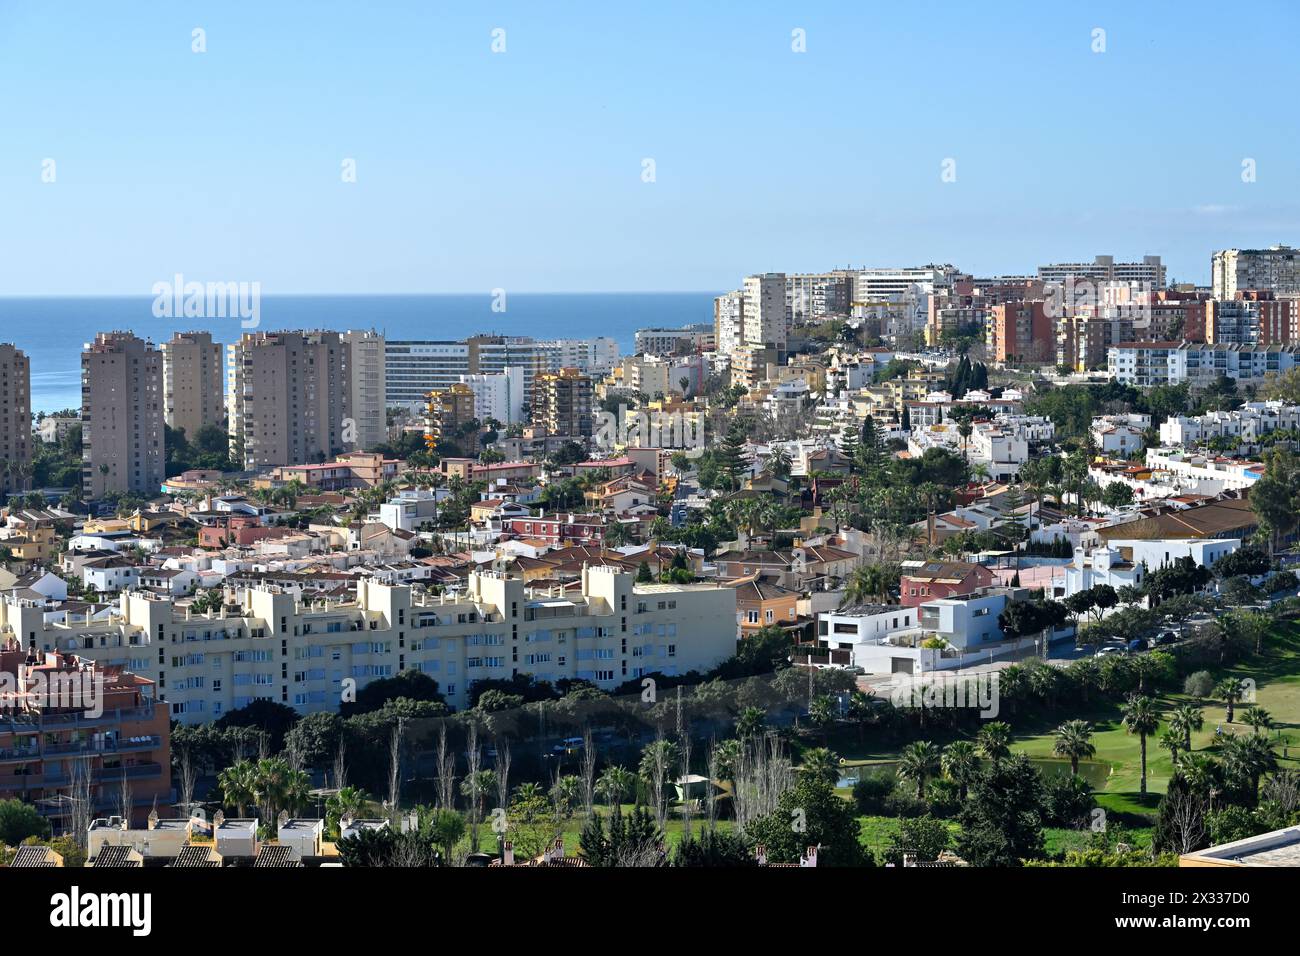 Vue sur la ville de destination touristique de Torremolinos à la mer Méditerranée au-delà, Costa del sol, Espagne Banque D'Images